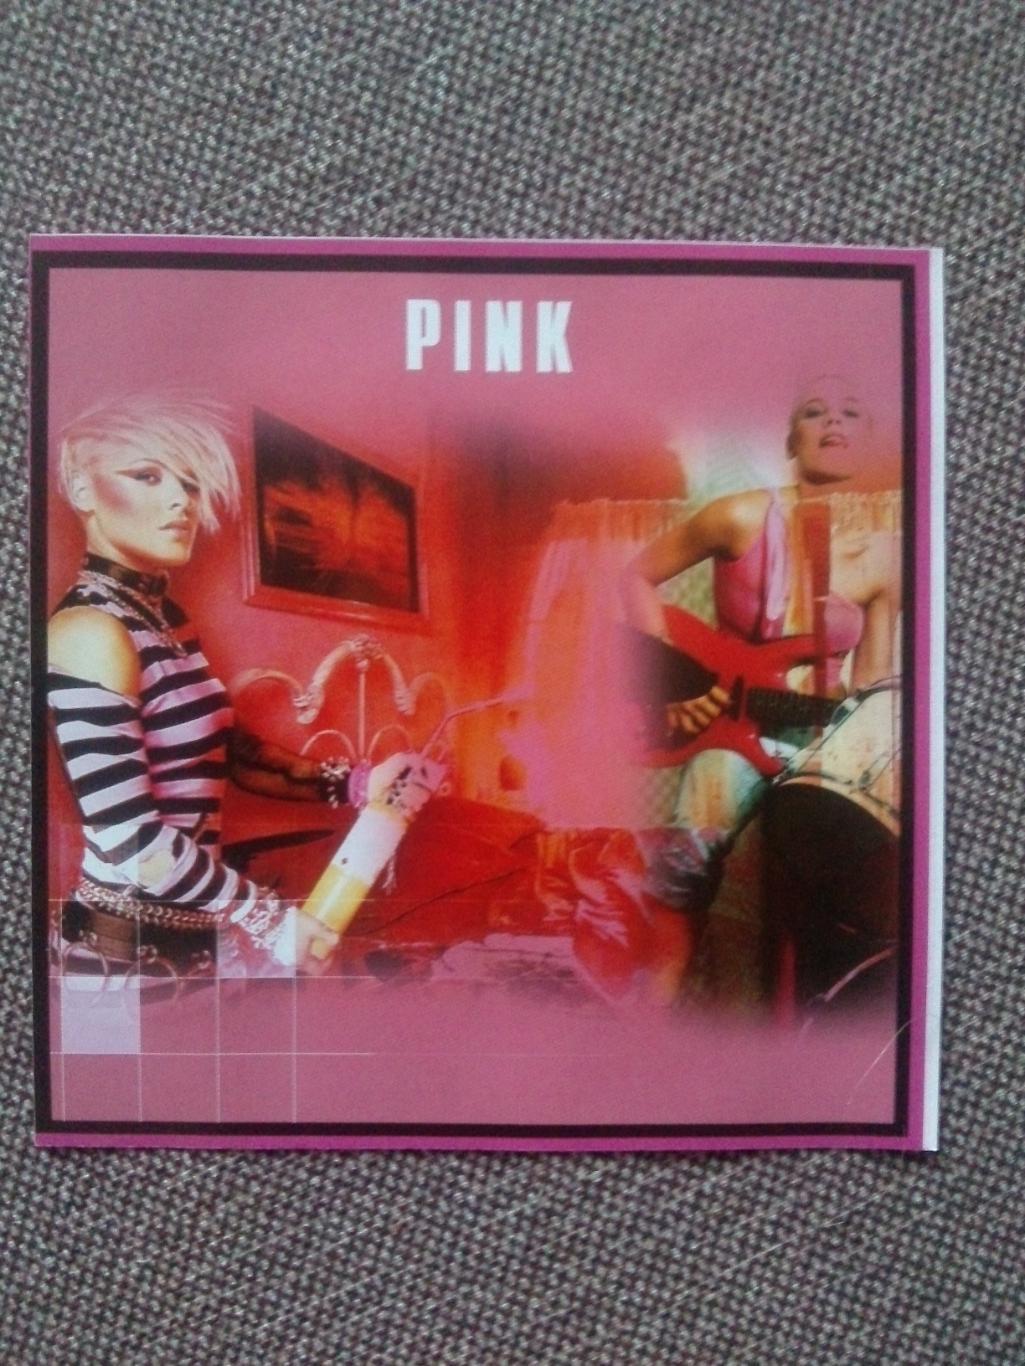 MP - 3 CD диск :Pink2000 - 2006 гг. (10 альбомов + 4 видео) лицензия Рок 1